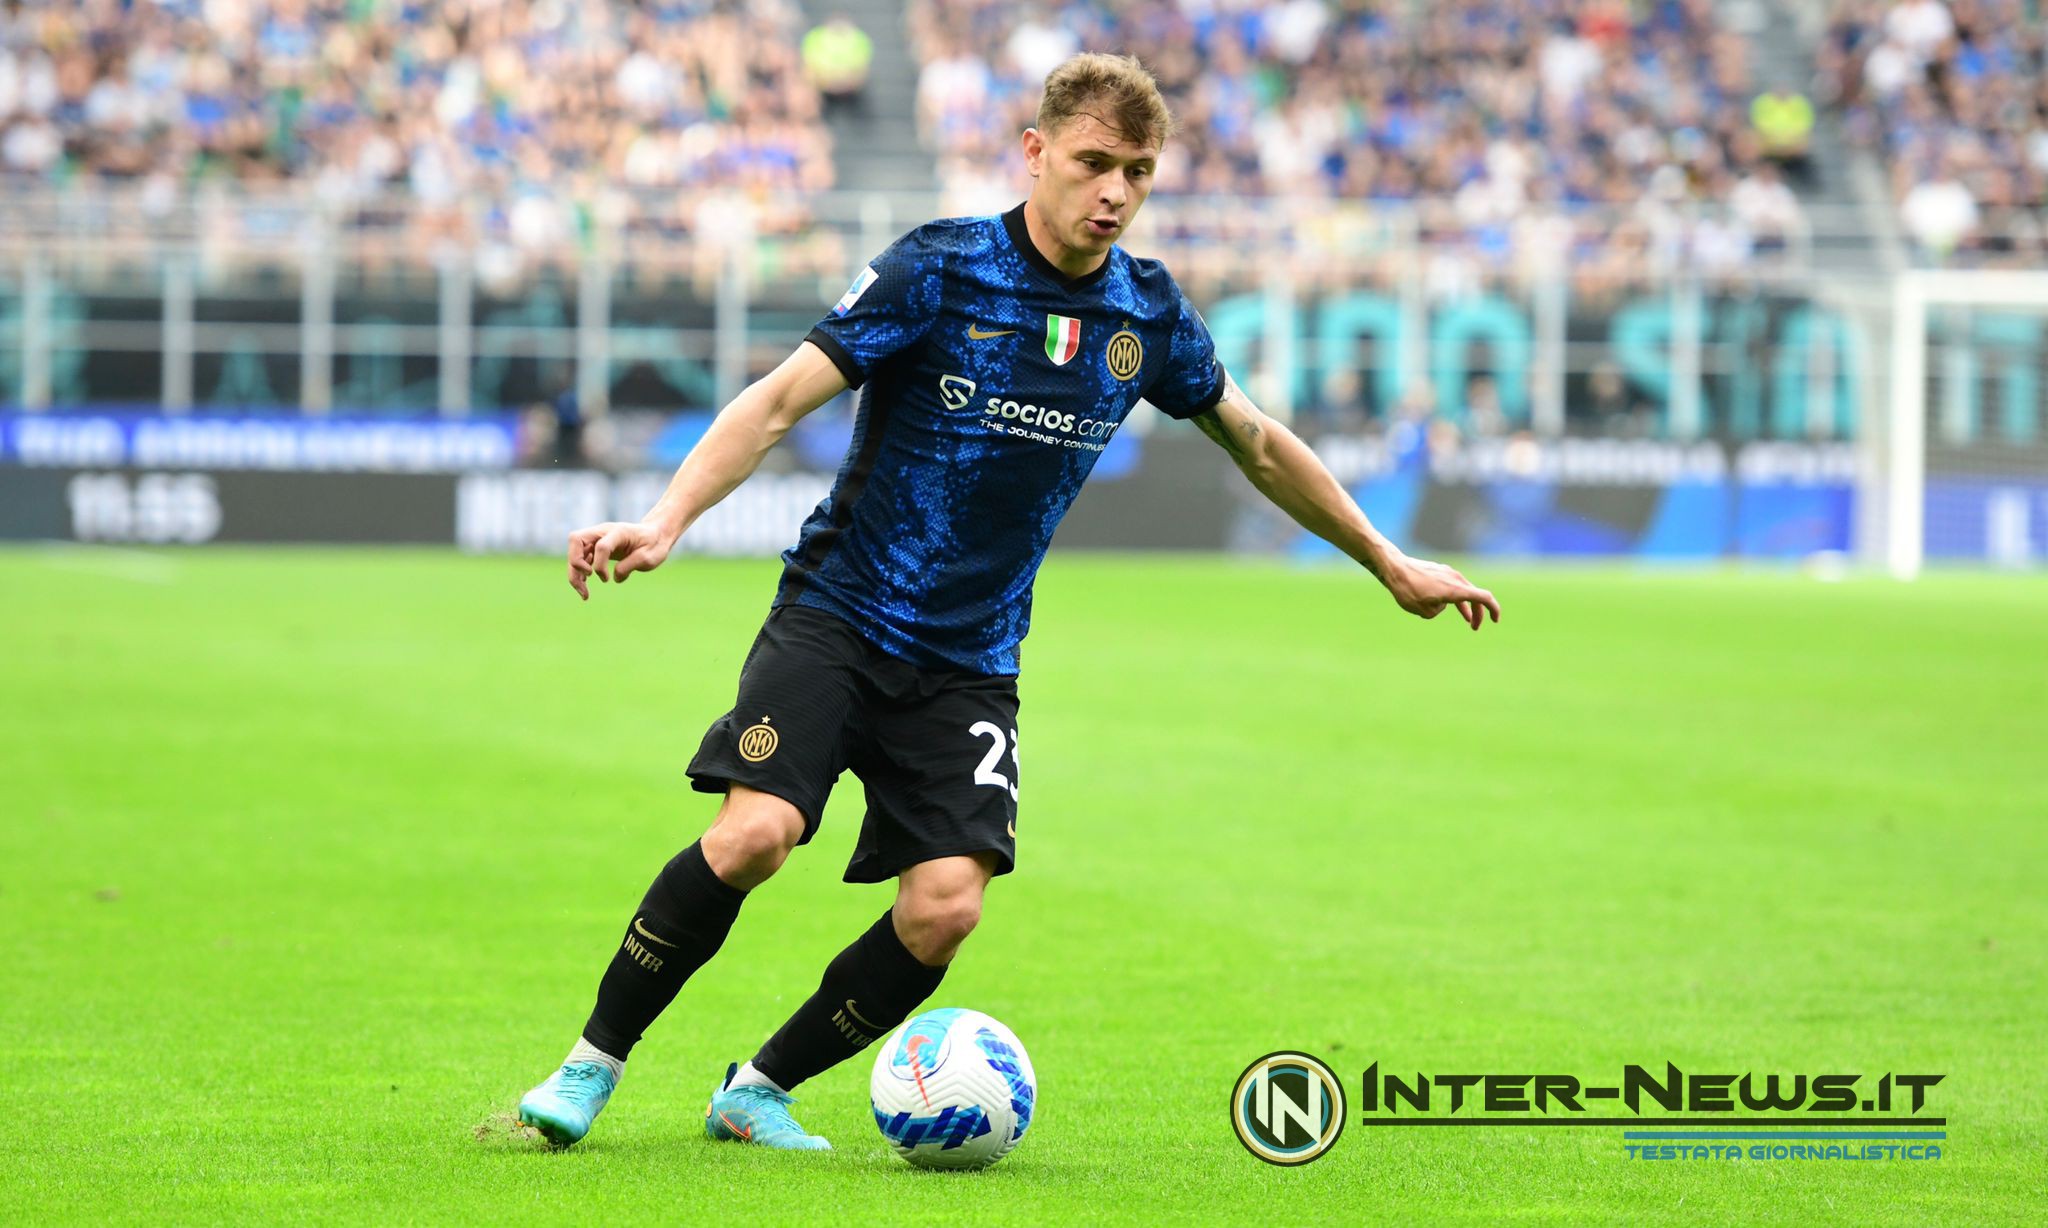 Nicolò Barella, Inter Sampdoria